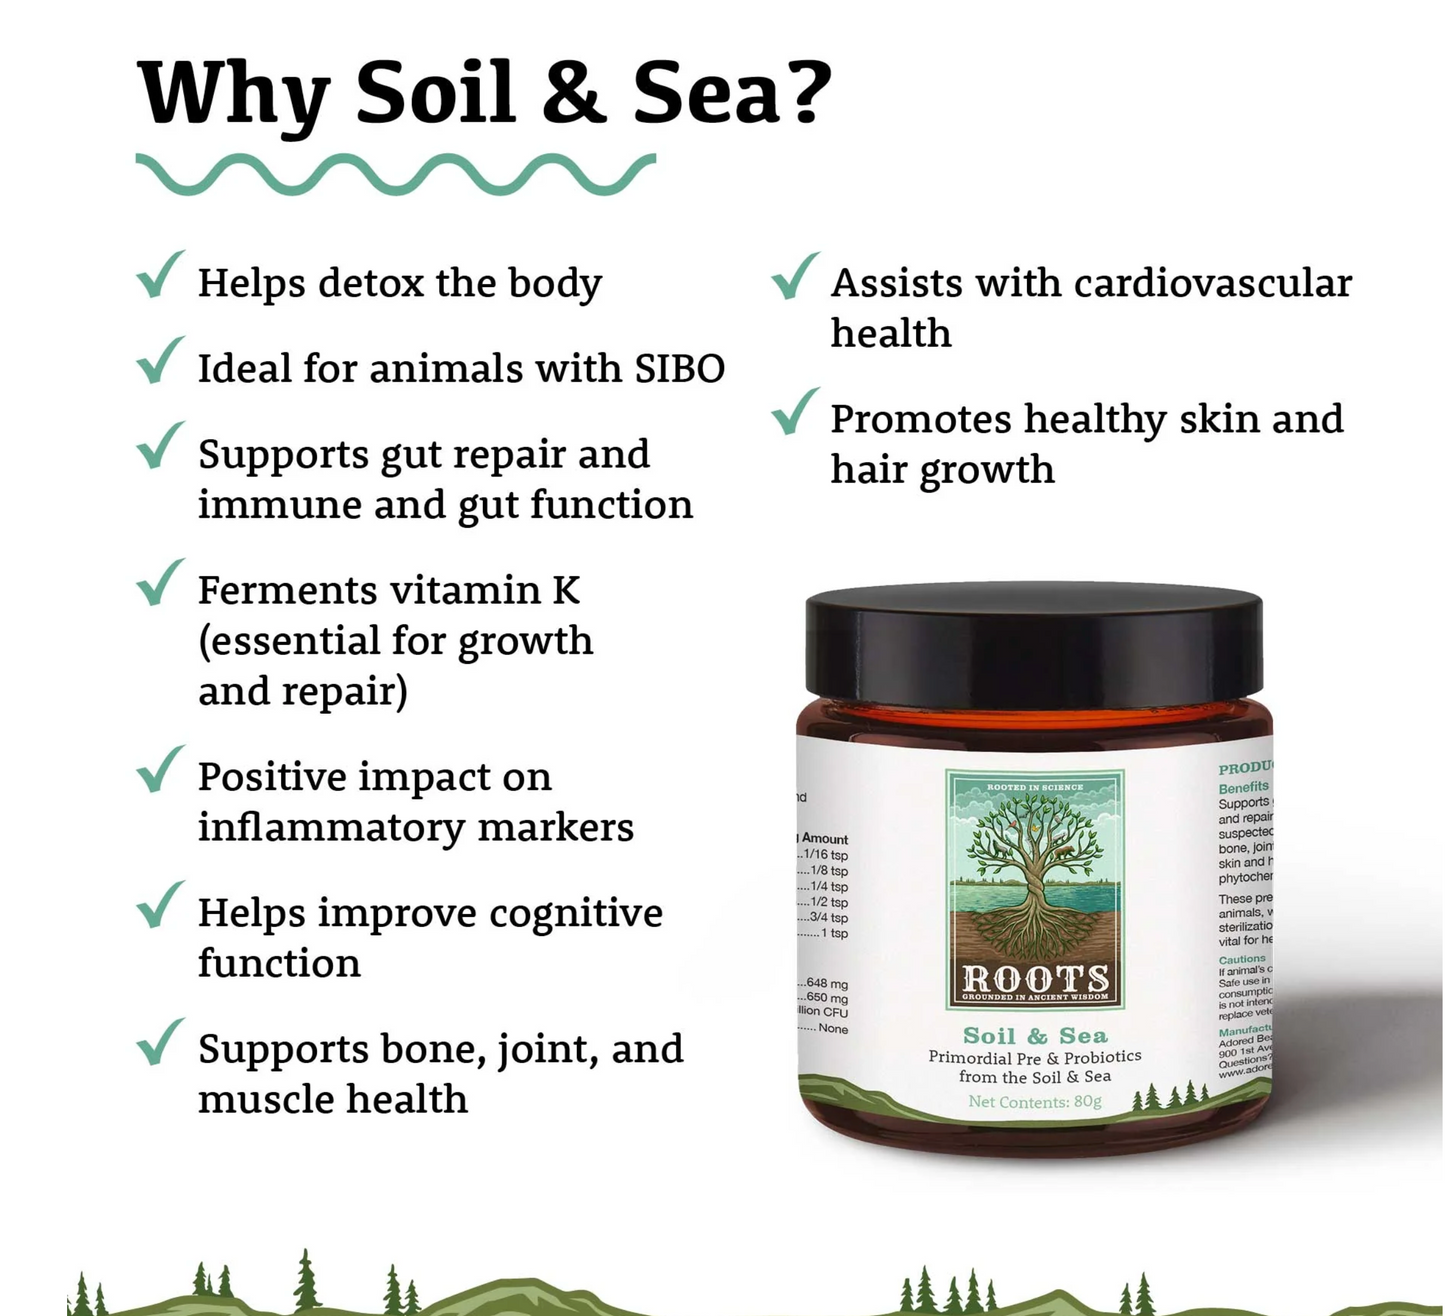 Soil & Sea - Primordial Pre & Probiotics